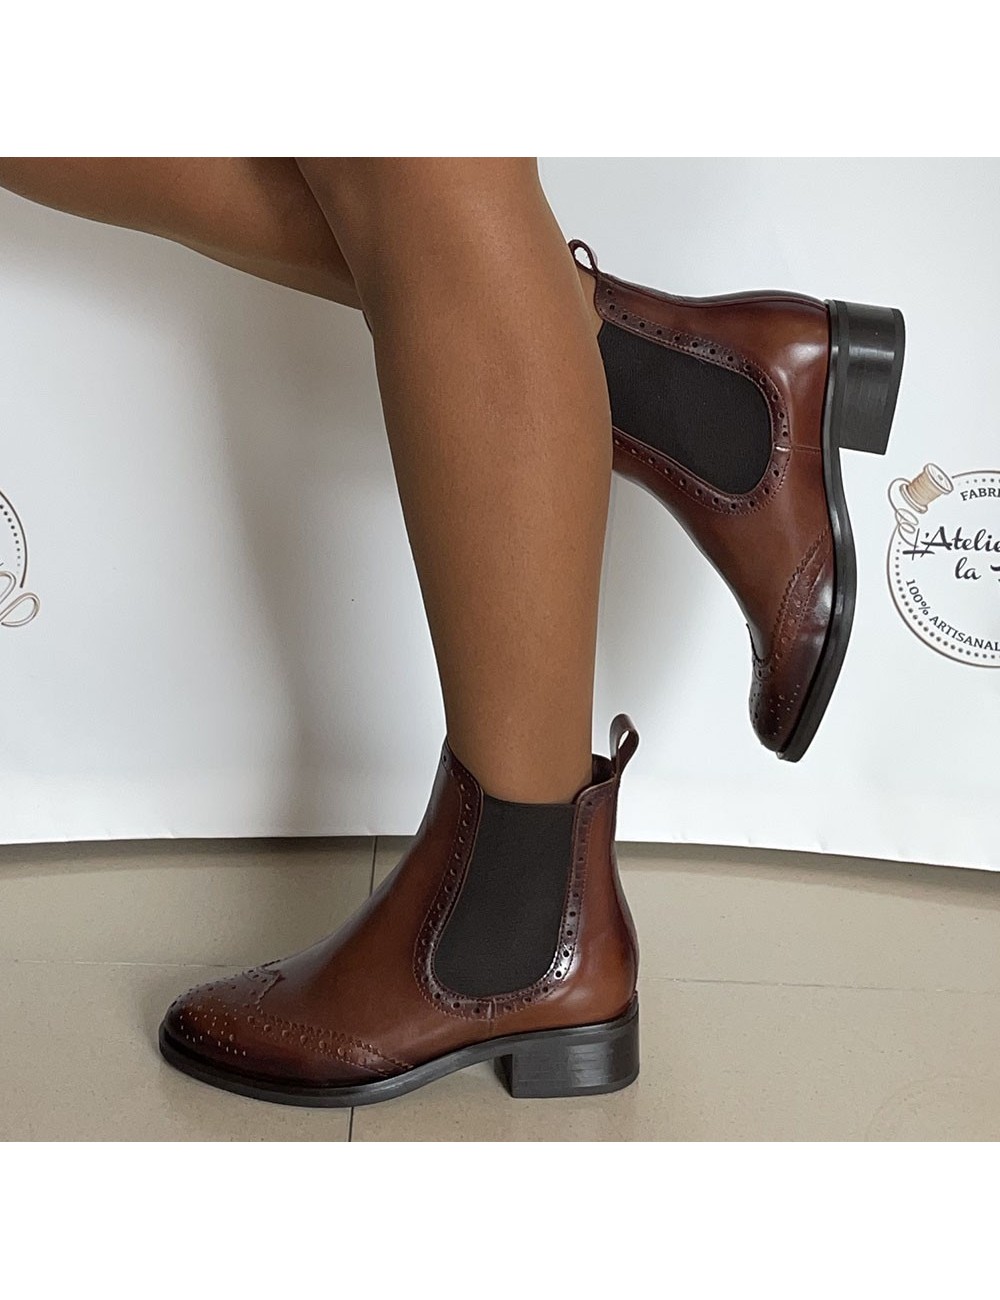 Bottines anglaises marron glacé femme - Accessoires pour chaussures